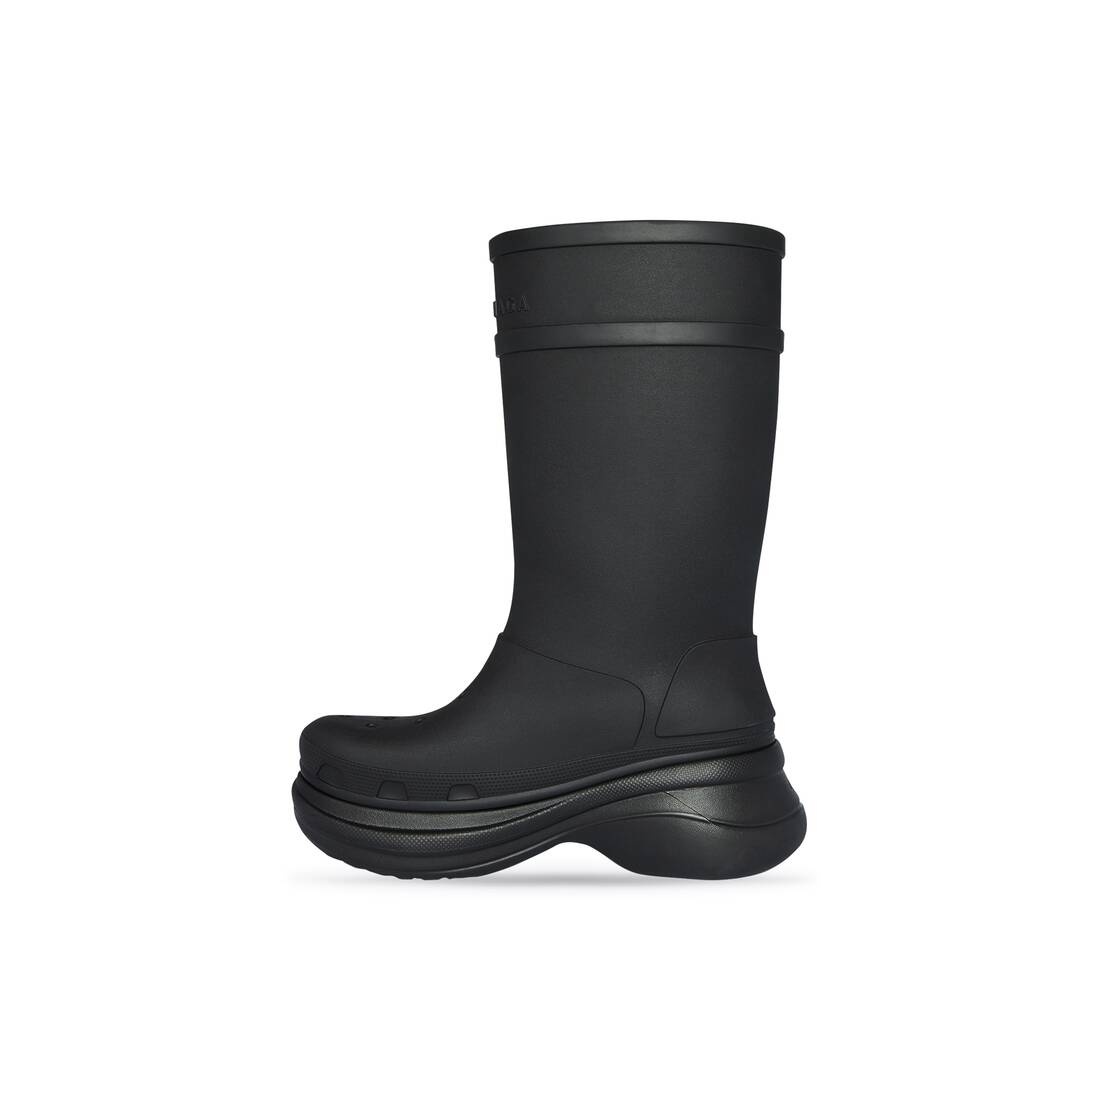 Men's Crocs™ Boot in Black - 4